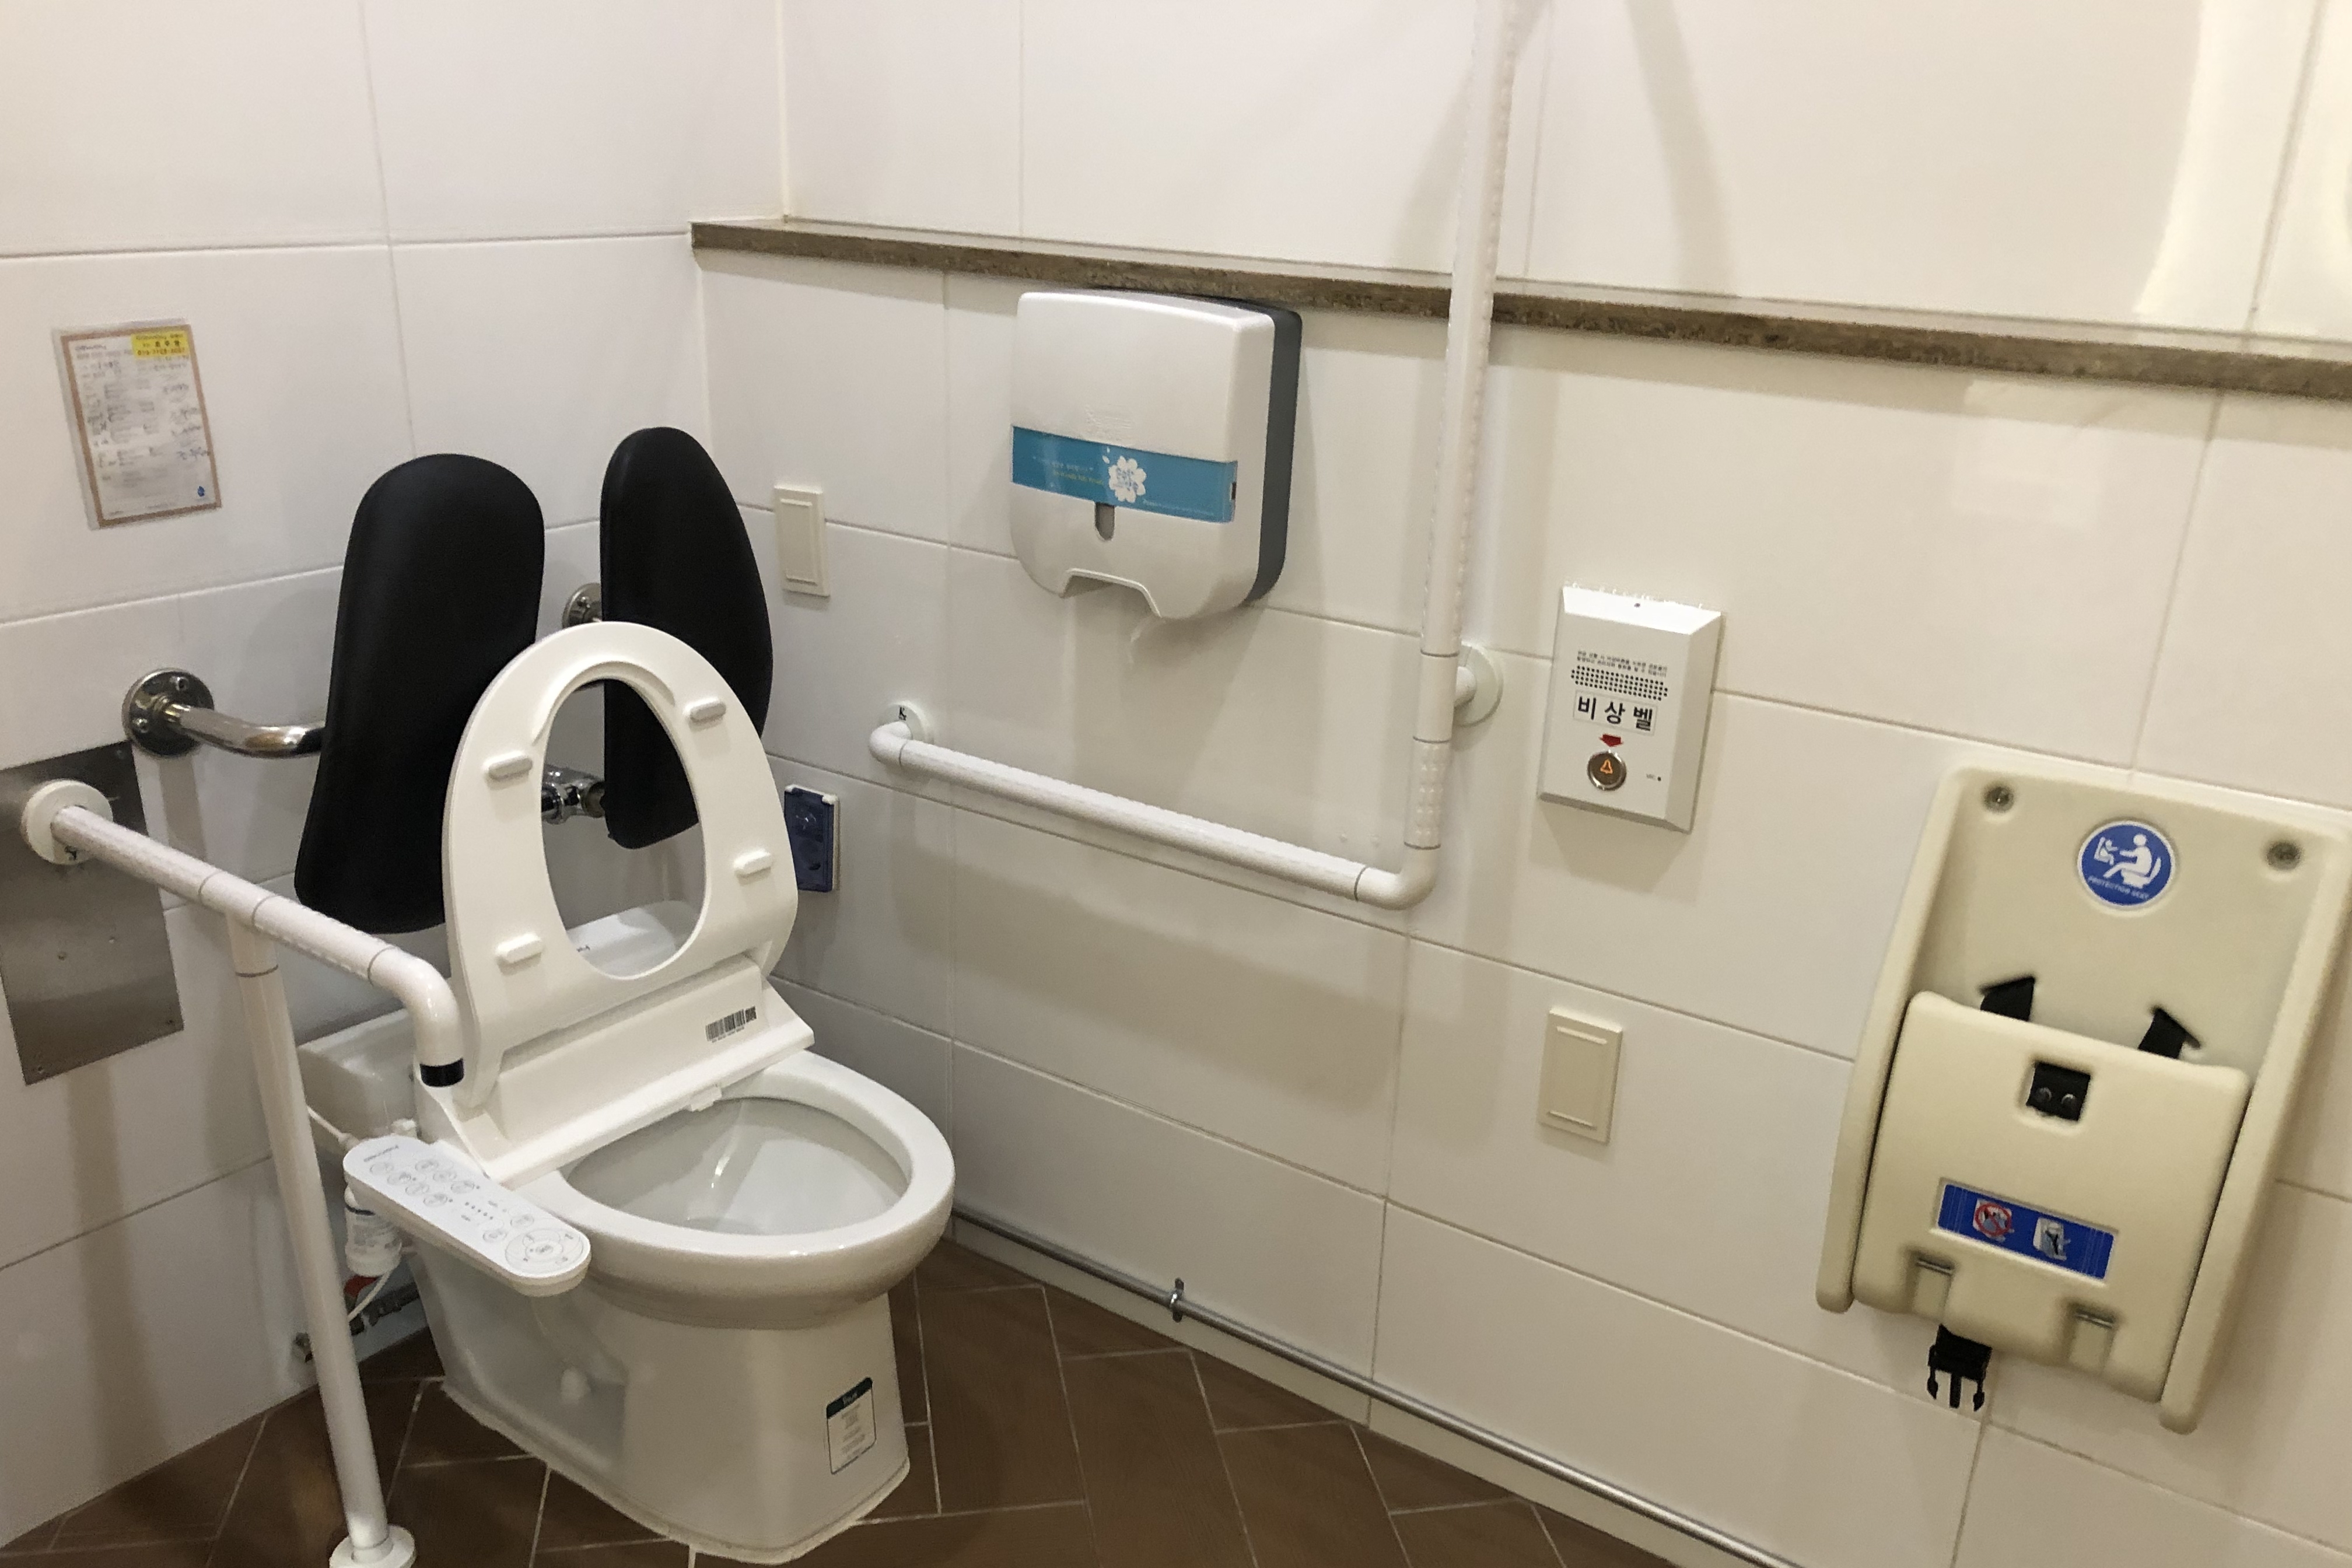 장애인 화장실0 : 장애인화장실 내부 시설물. 기저귀교환대도 비치되어있음